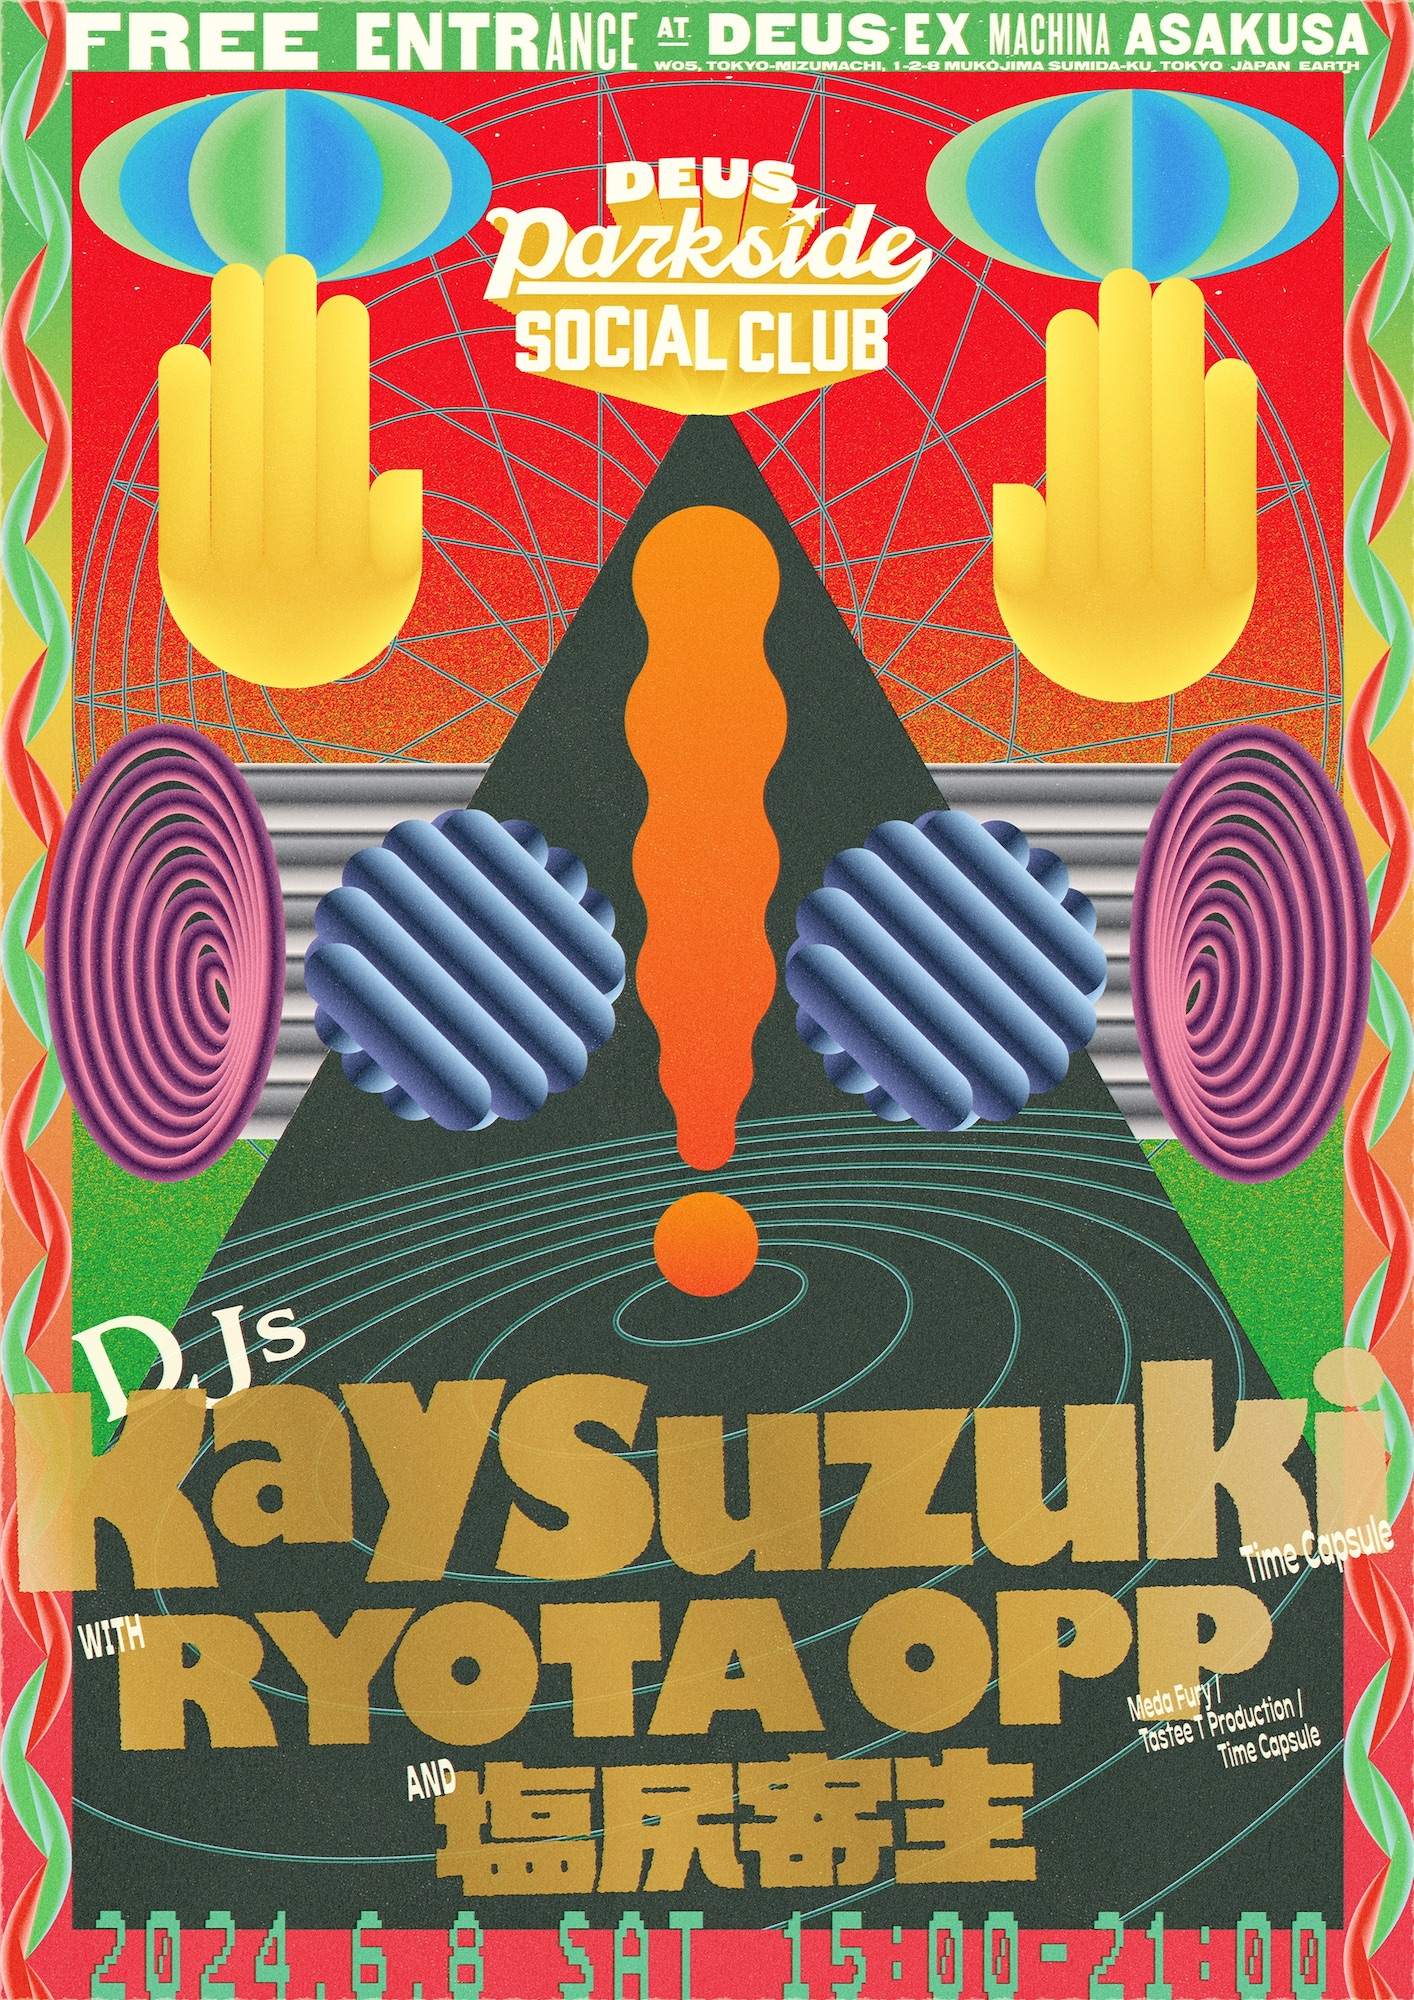 DEUS Parkside Social Club feat. Kay Suzuki at Deus Ex Machina 